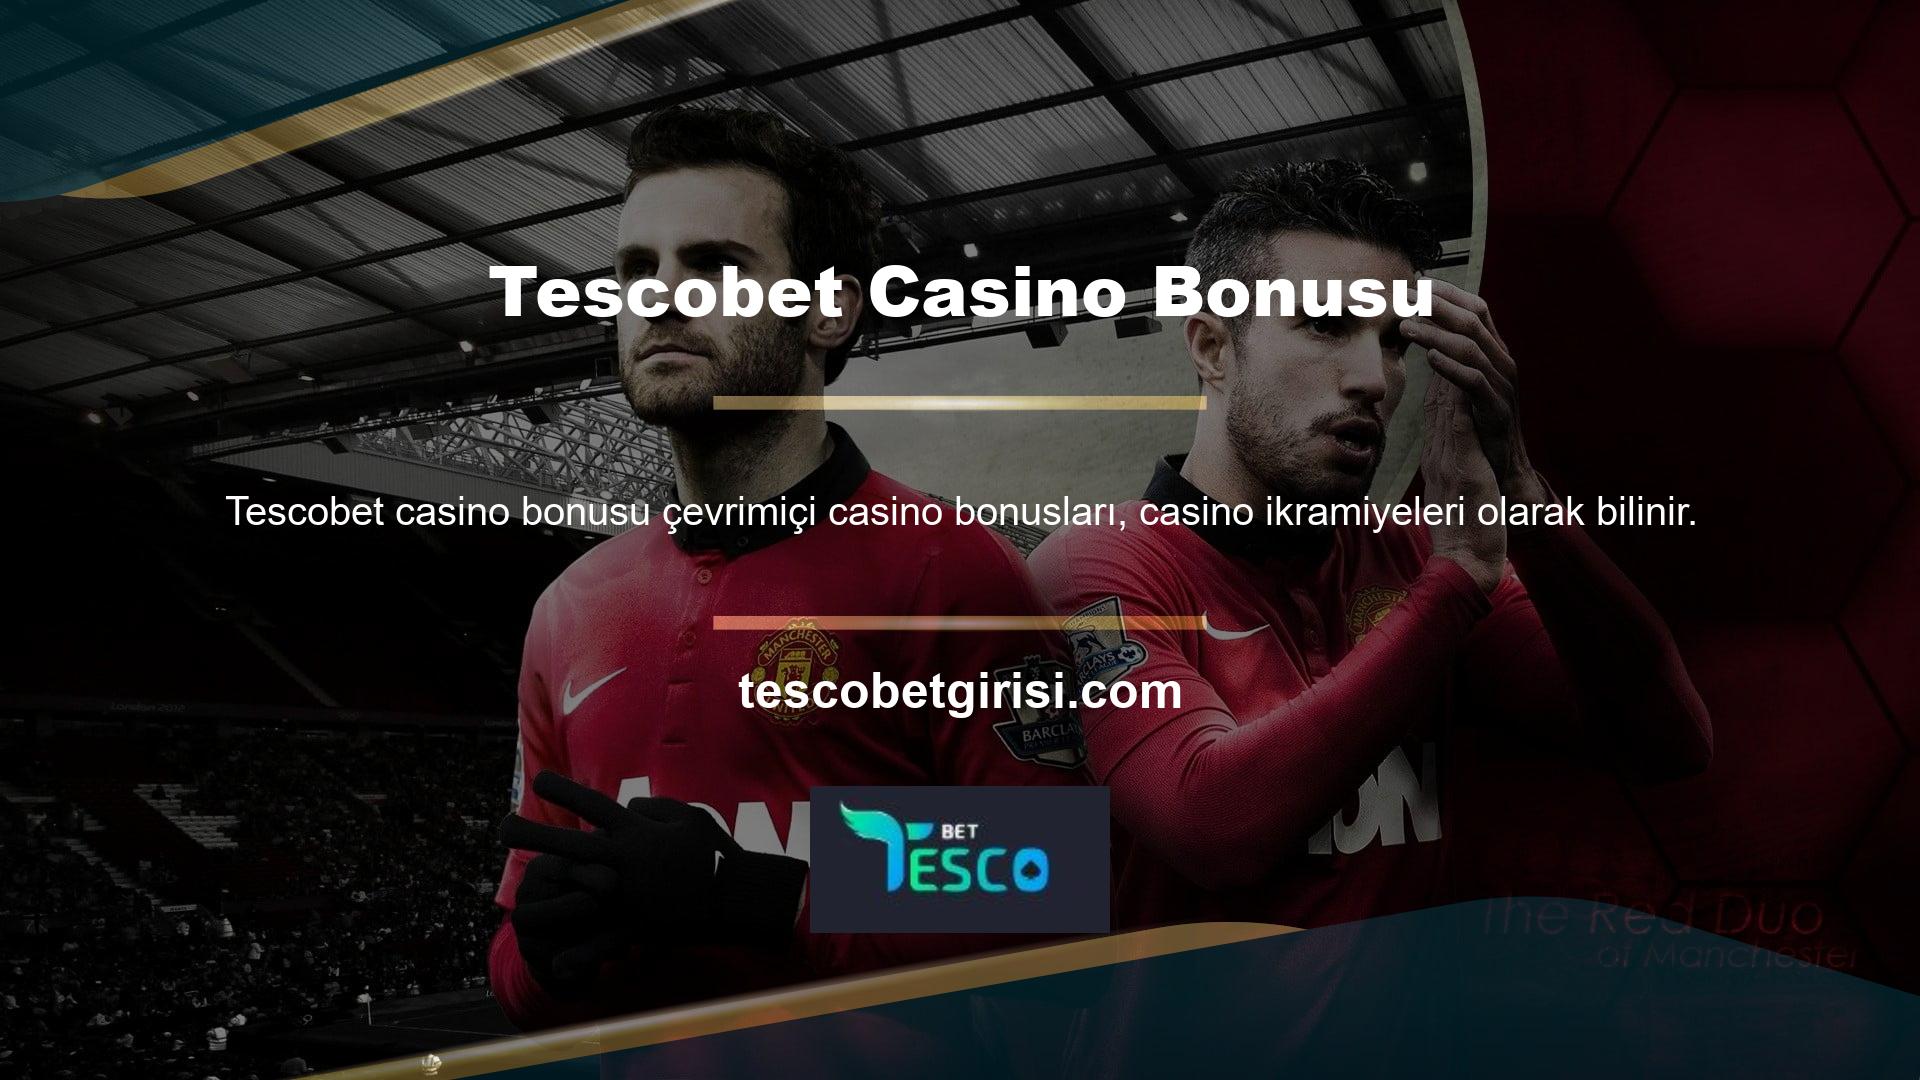 Tescobet casino kategorisi, oyun türüne göre farklı oranlara sahiptir